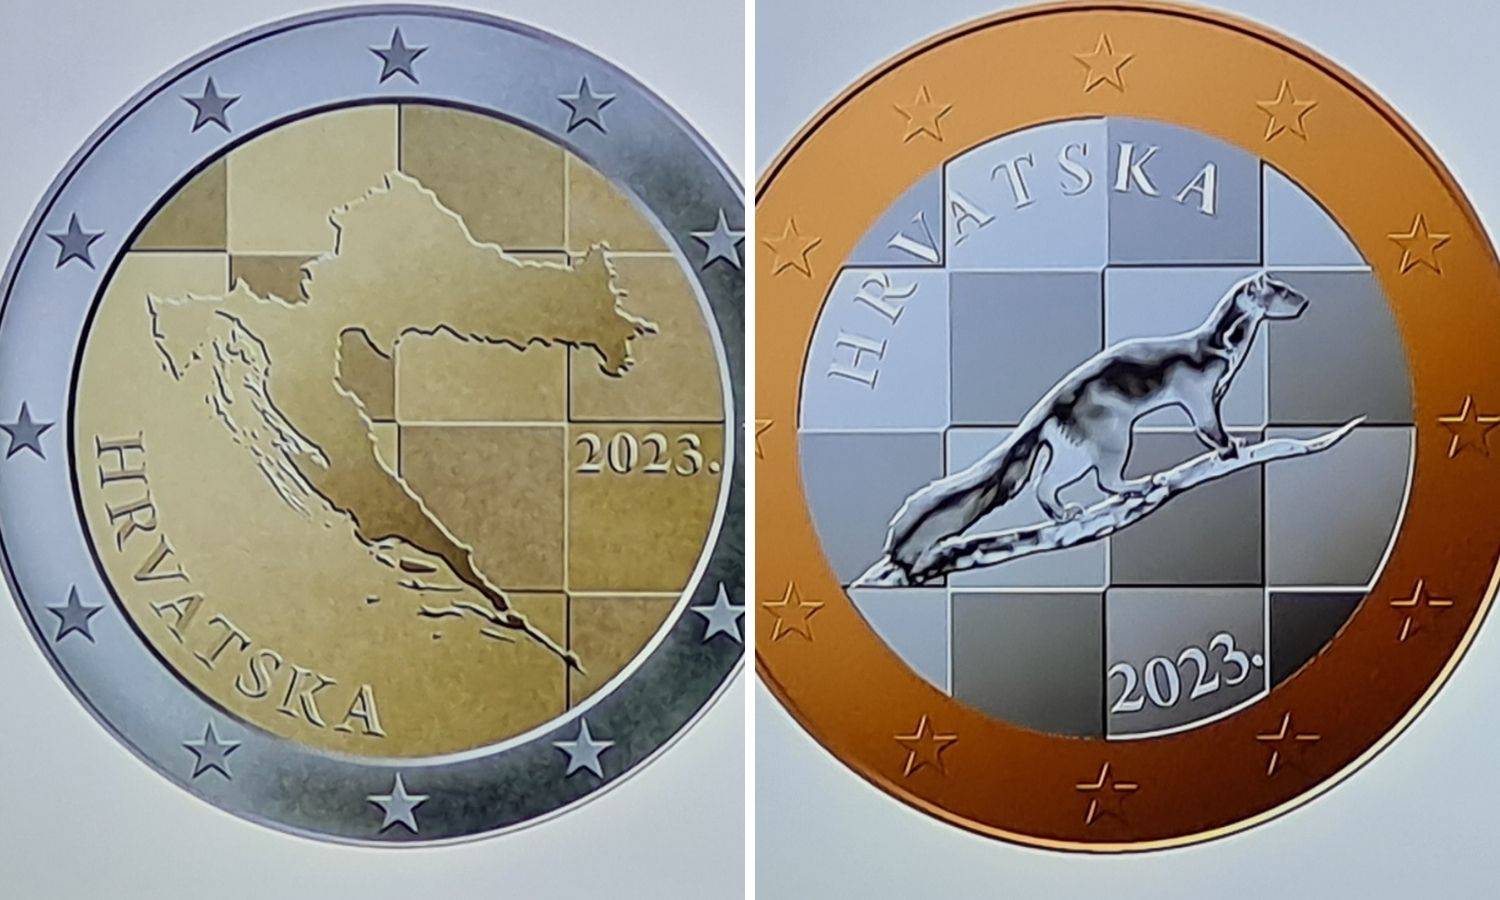 Ovo su naše kovanice eura: Na 2 eura karta Hrvatske, na 1 euro kuna, na cente Tesla i glagoljica